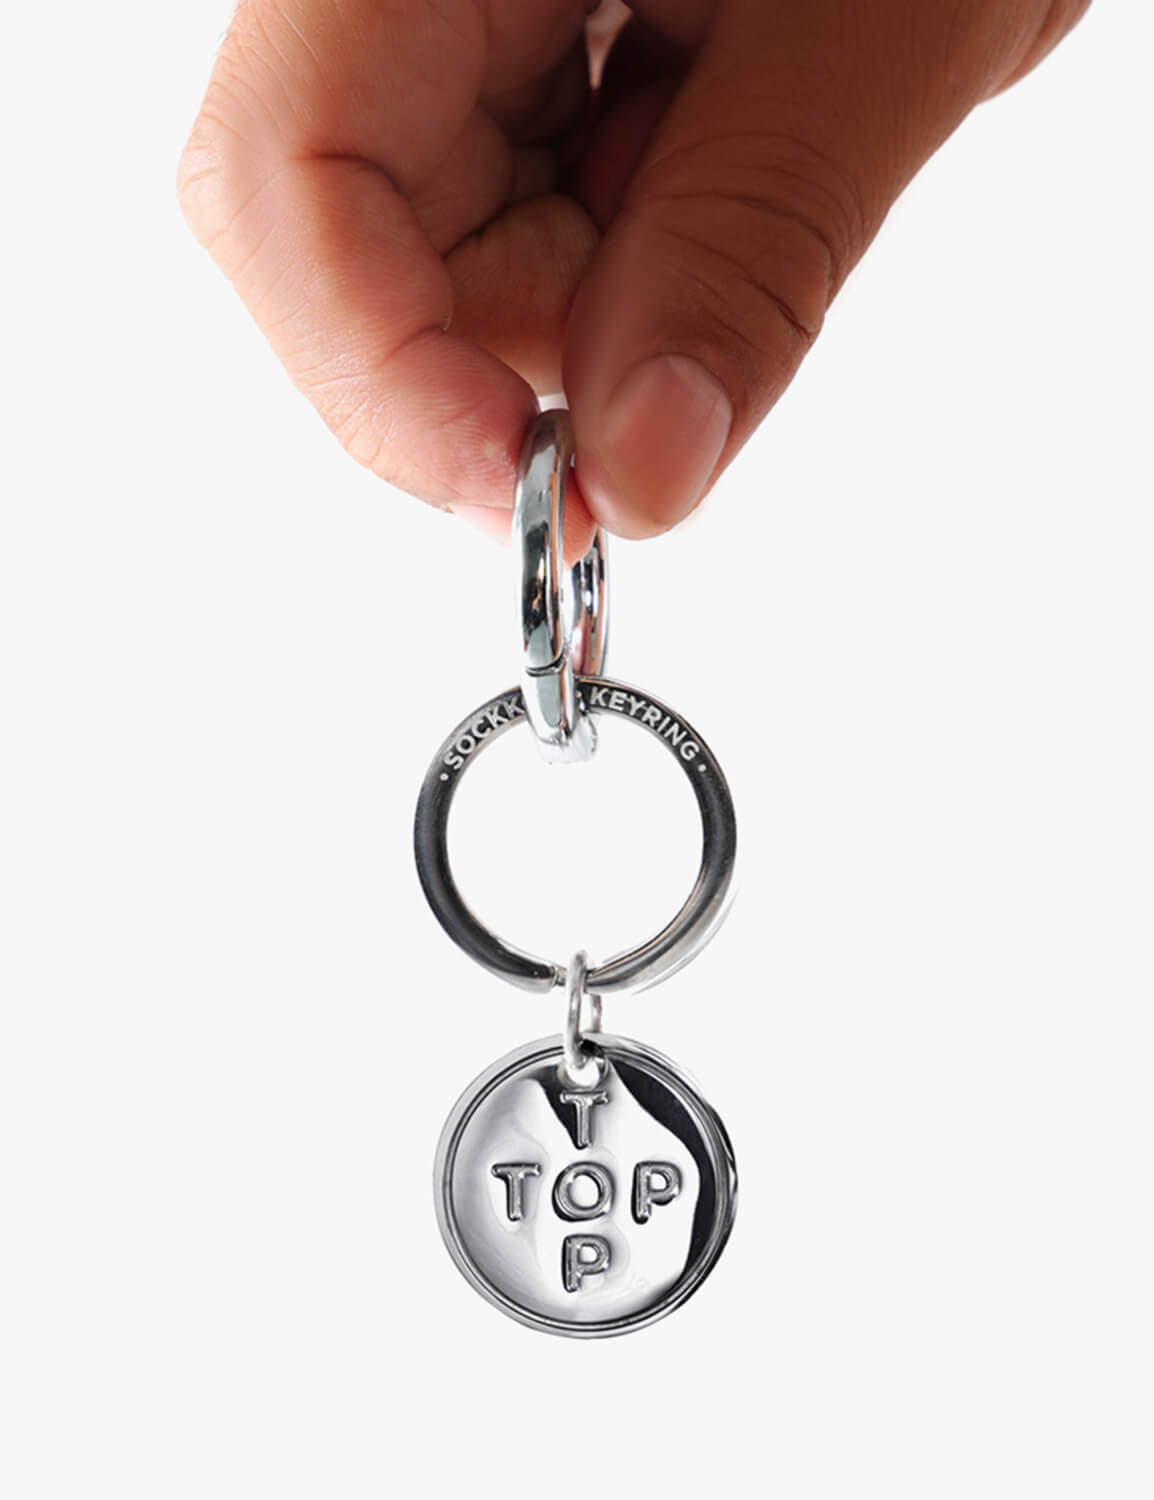 Top or Btm Steel Key Ring